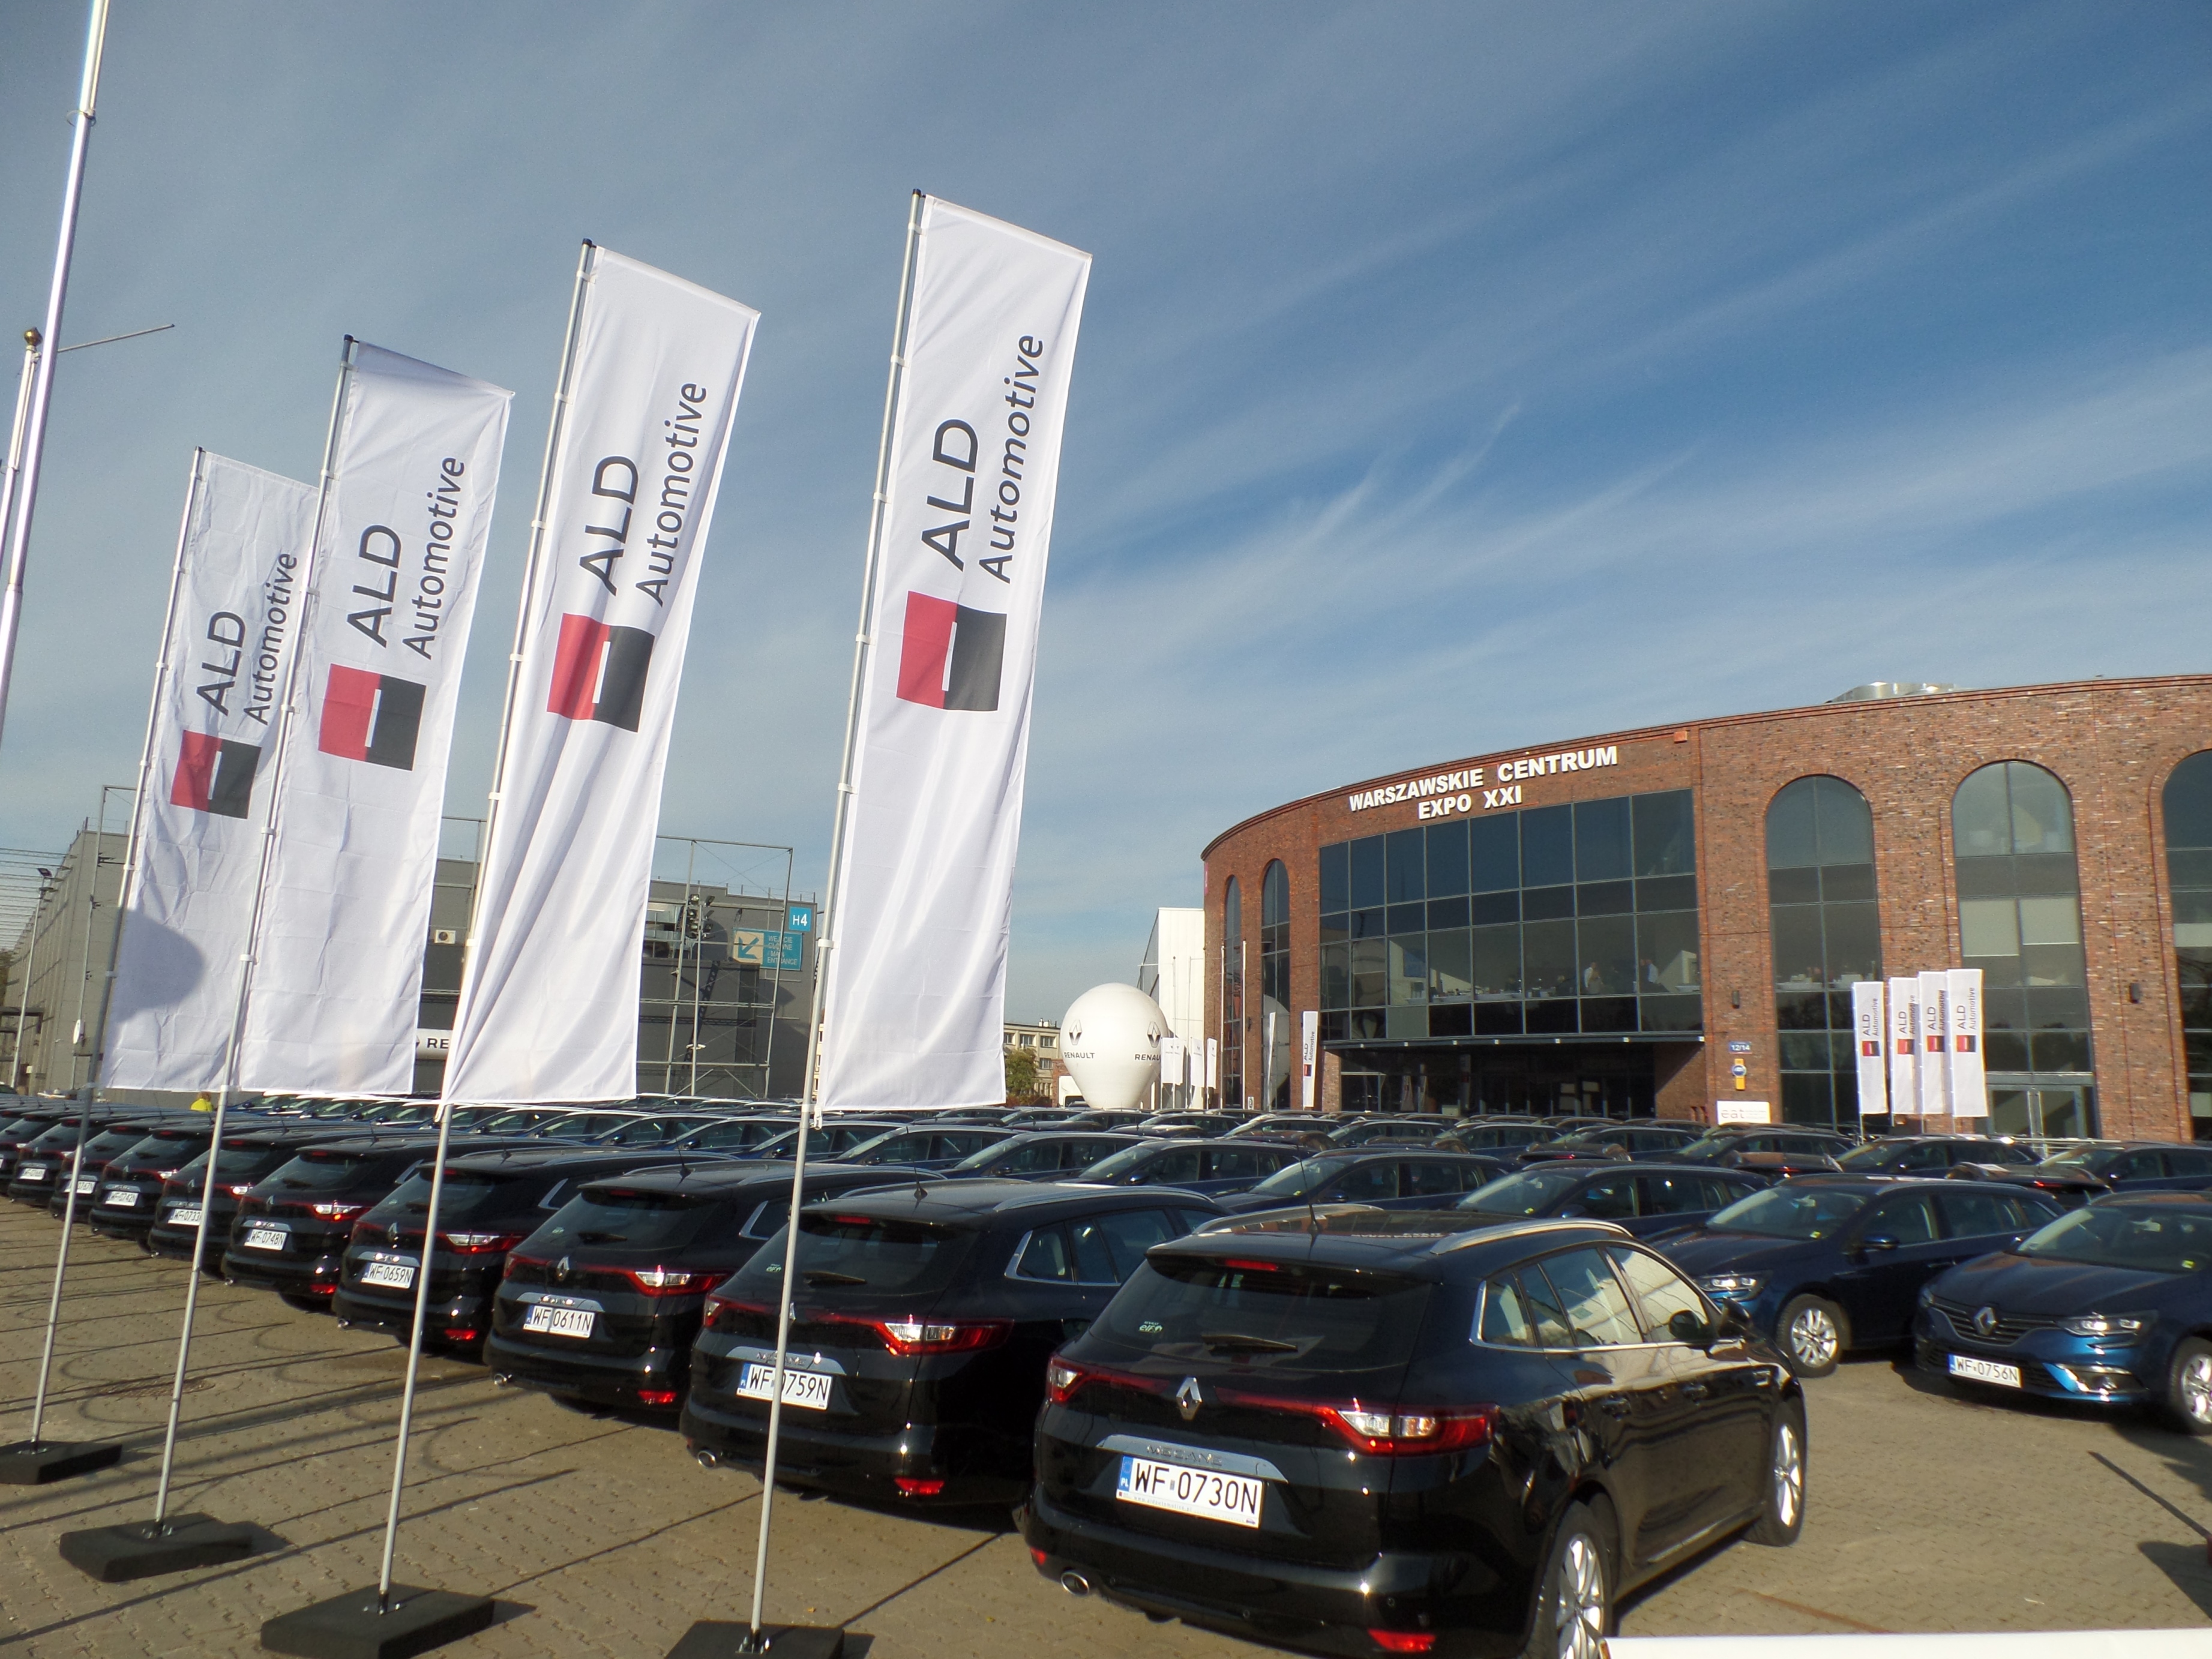 12 000 samochodów we flocie ALD Automotive Polska. Grupa Sanofi kolejnym międzynarodowym koncernem w gronie klientów ALD Automotive Polska.